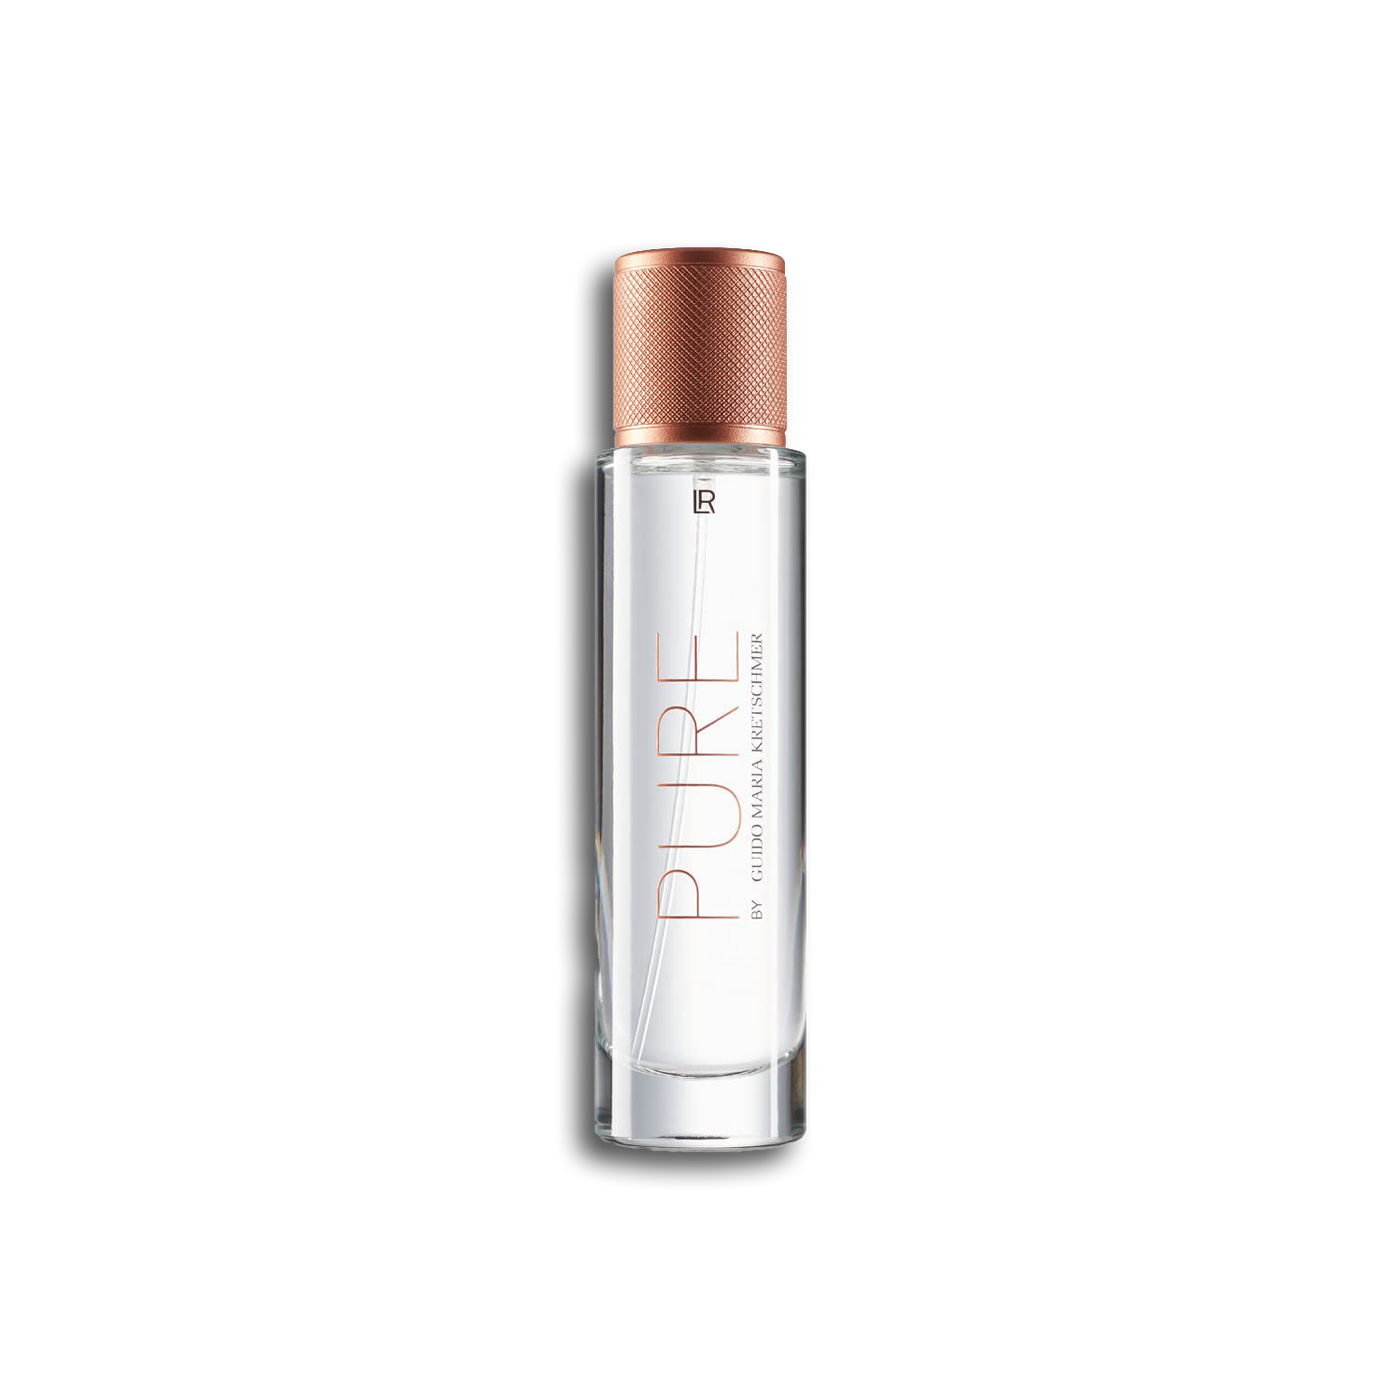 LR Pure by Guido Maria Kretschmer Eau de Parfum for Women 50ml